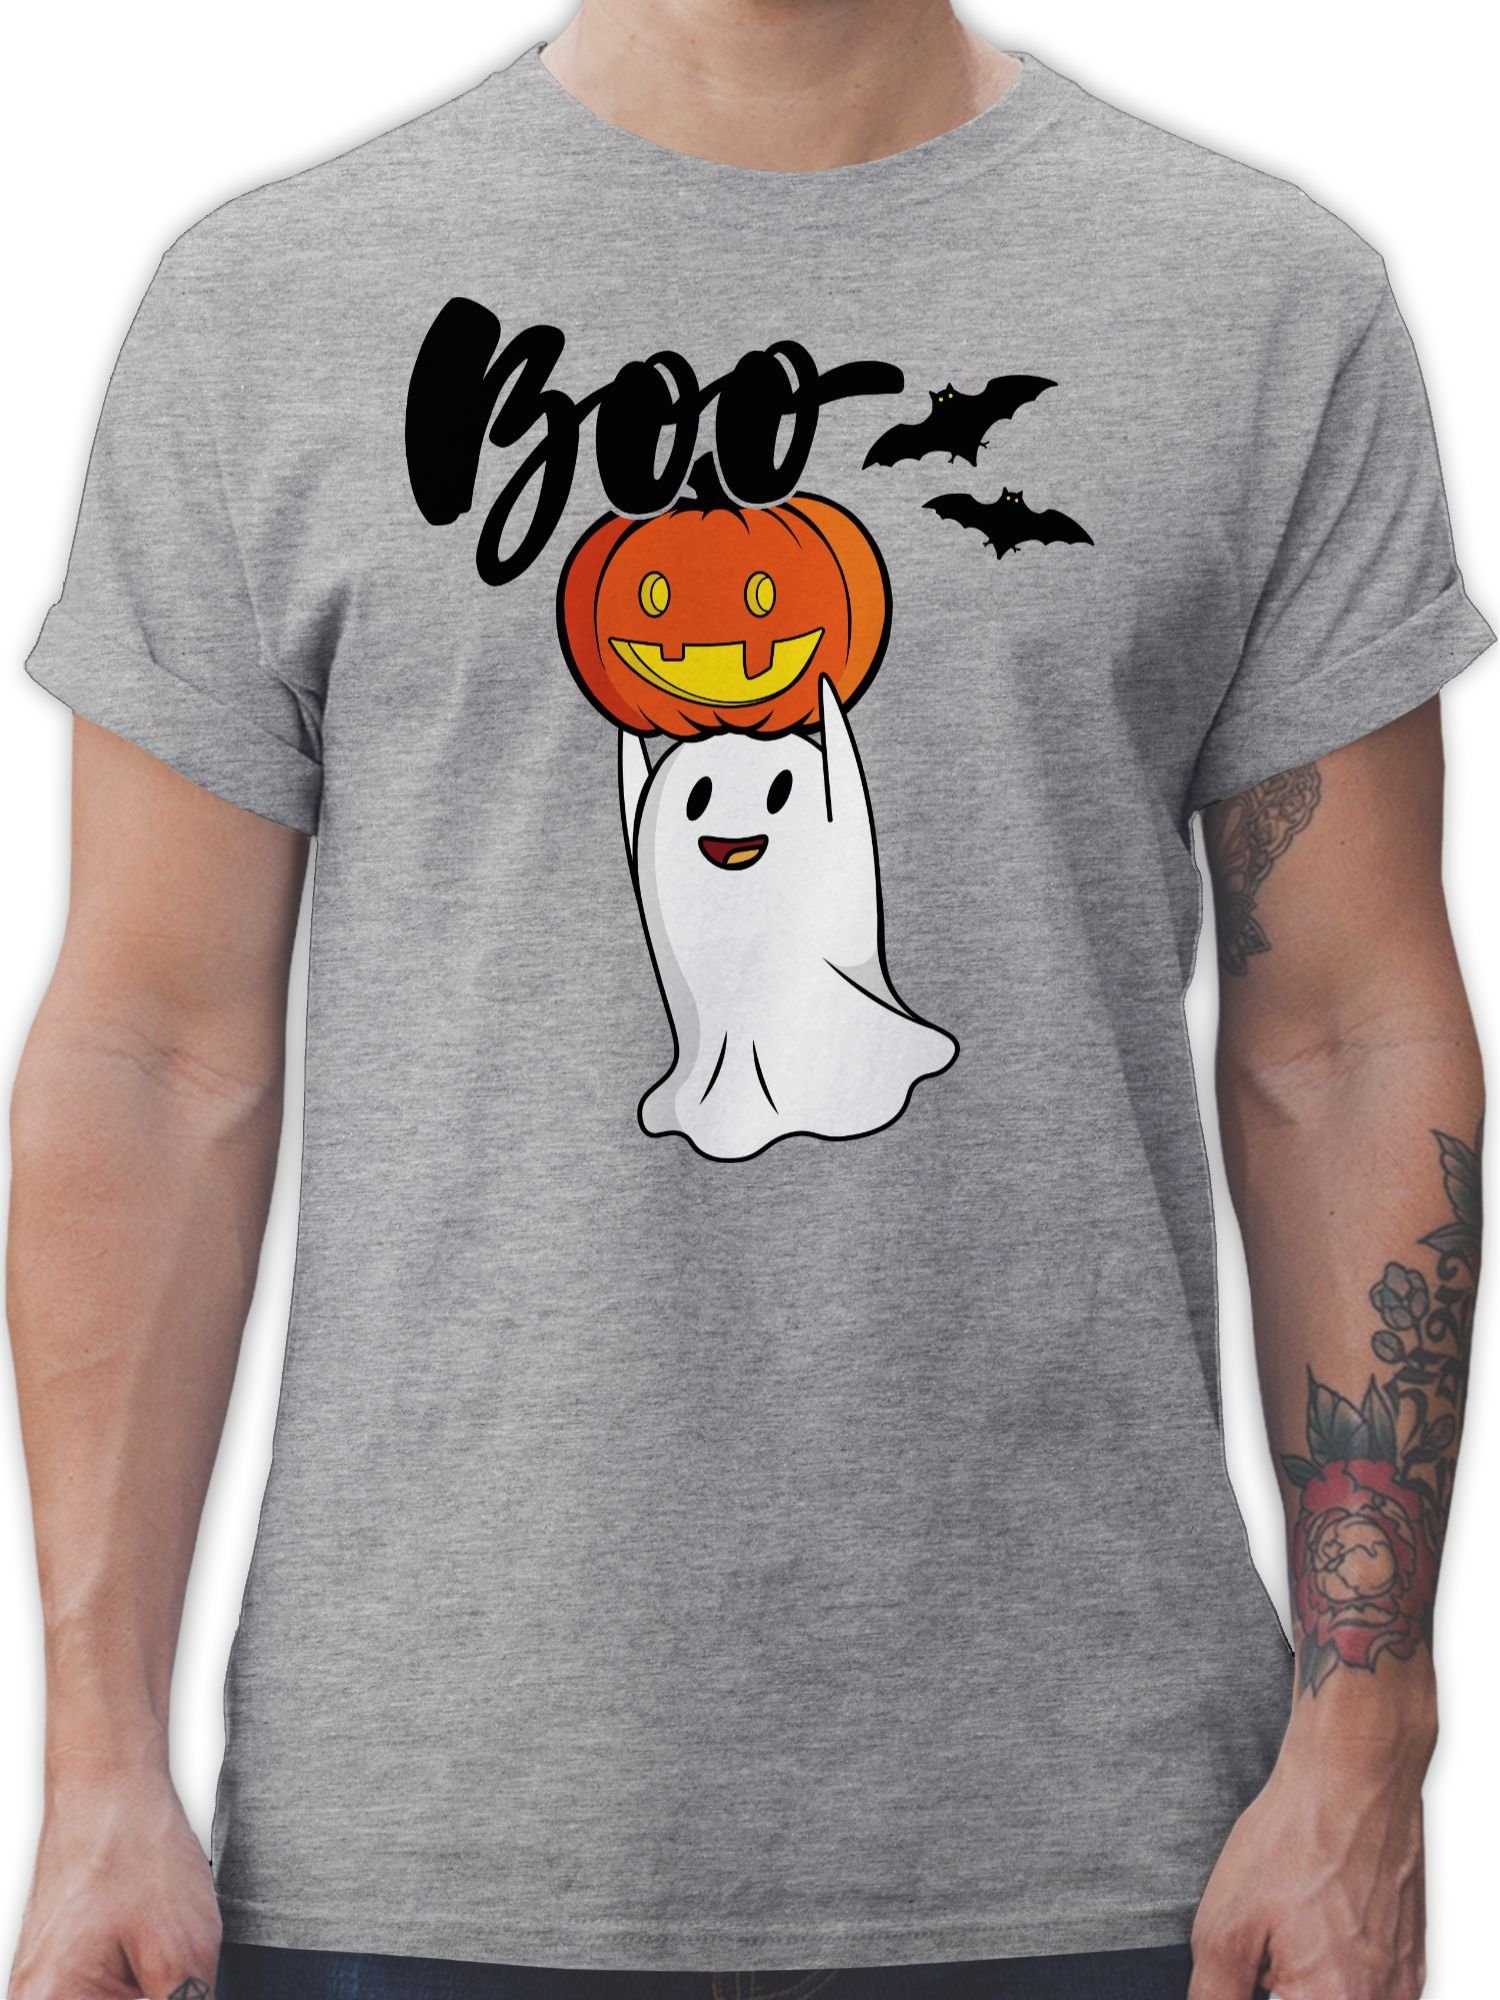 Gespenster Geist Herren meliert Shirtracer Kostüme Grau Kürbis Geister Boo 1 Halloween Gespenst T-Shirt